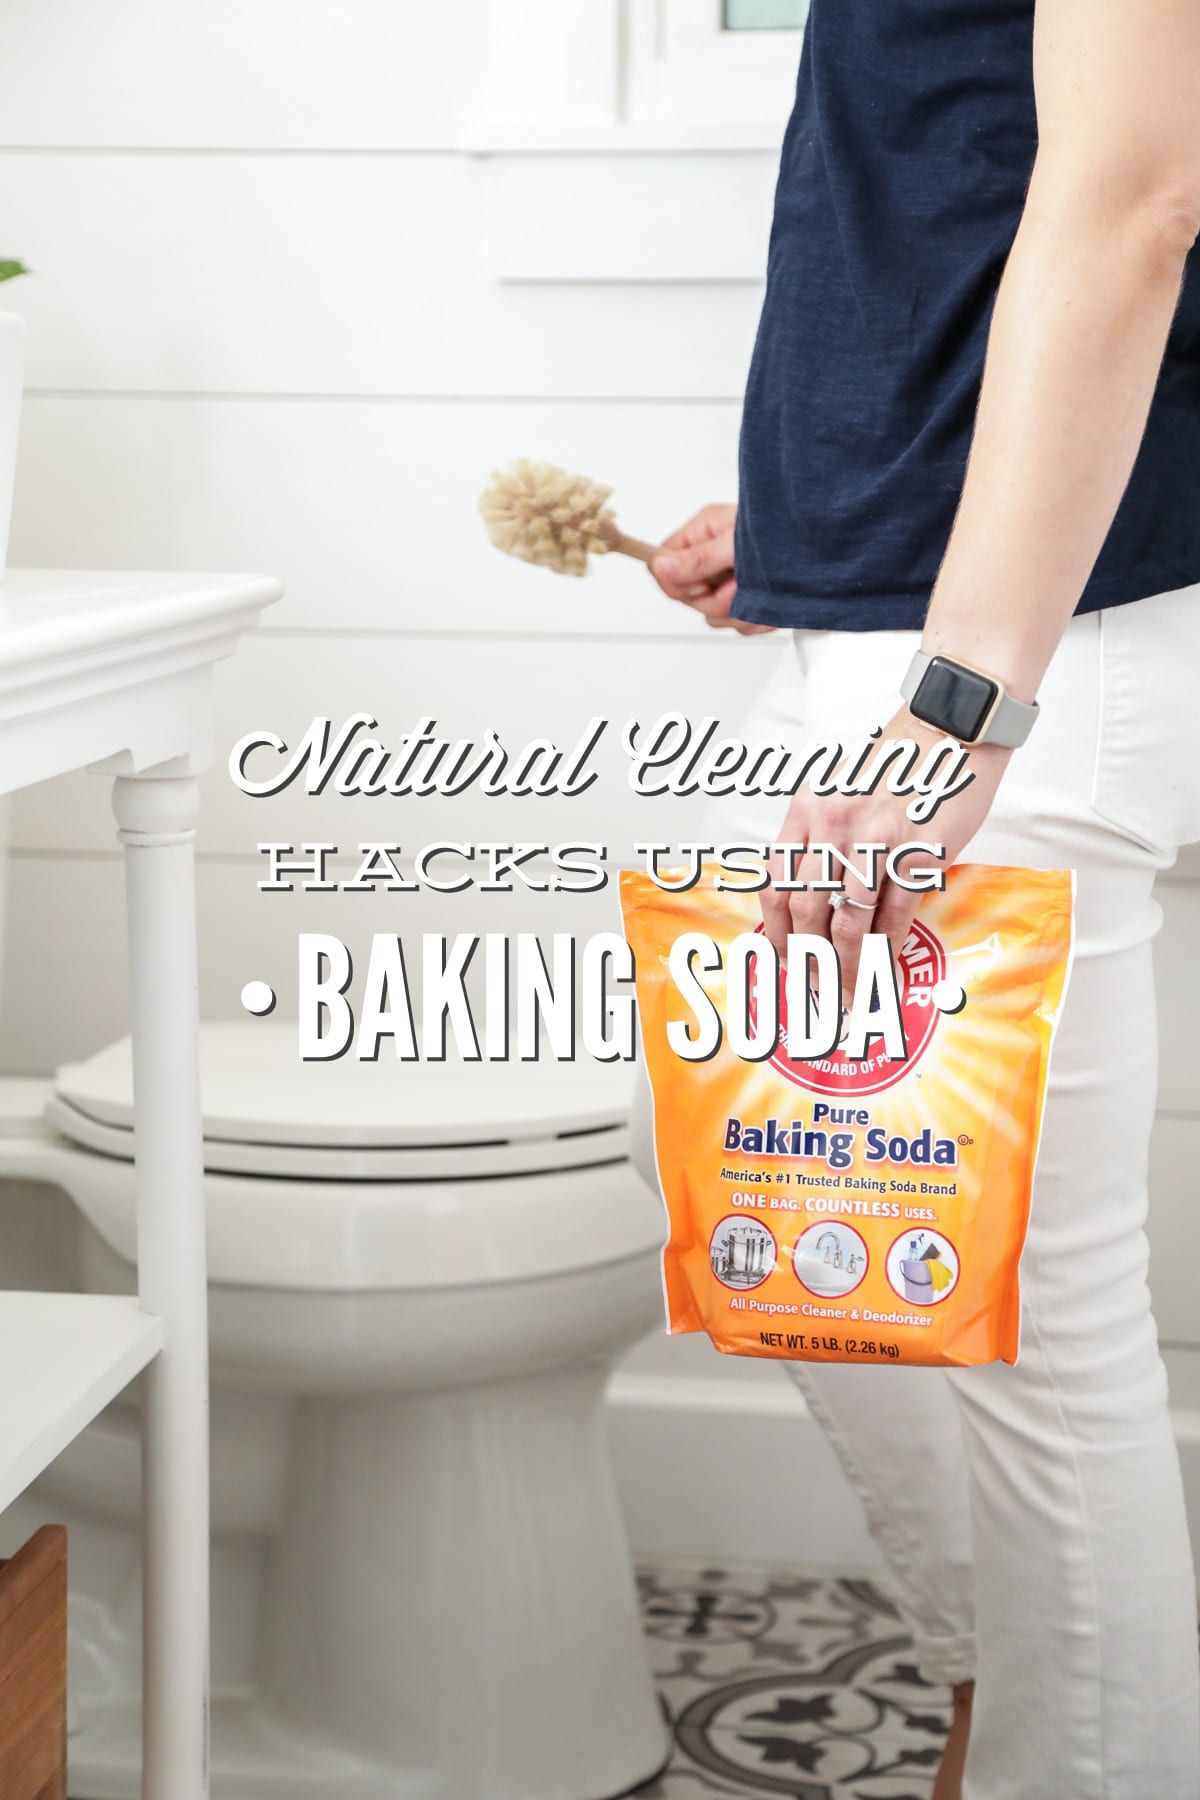 Natural Cleaning Hacks Using Baking Soda